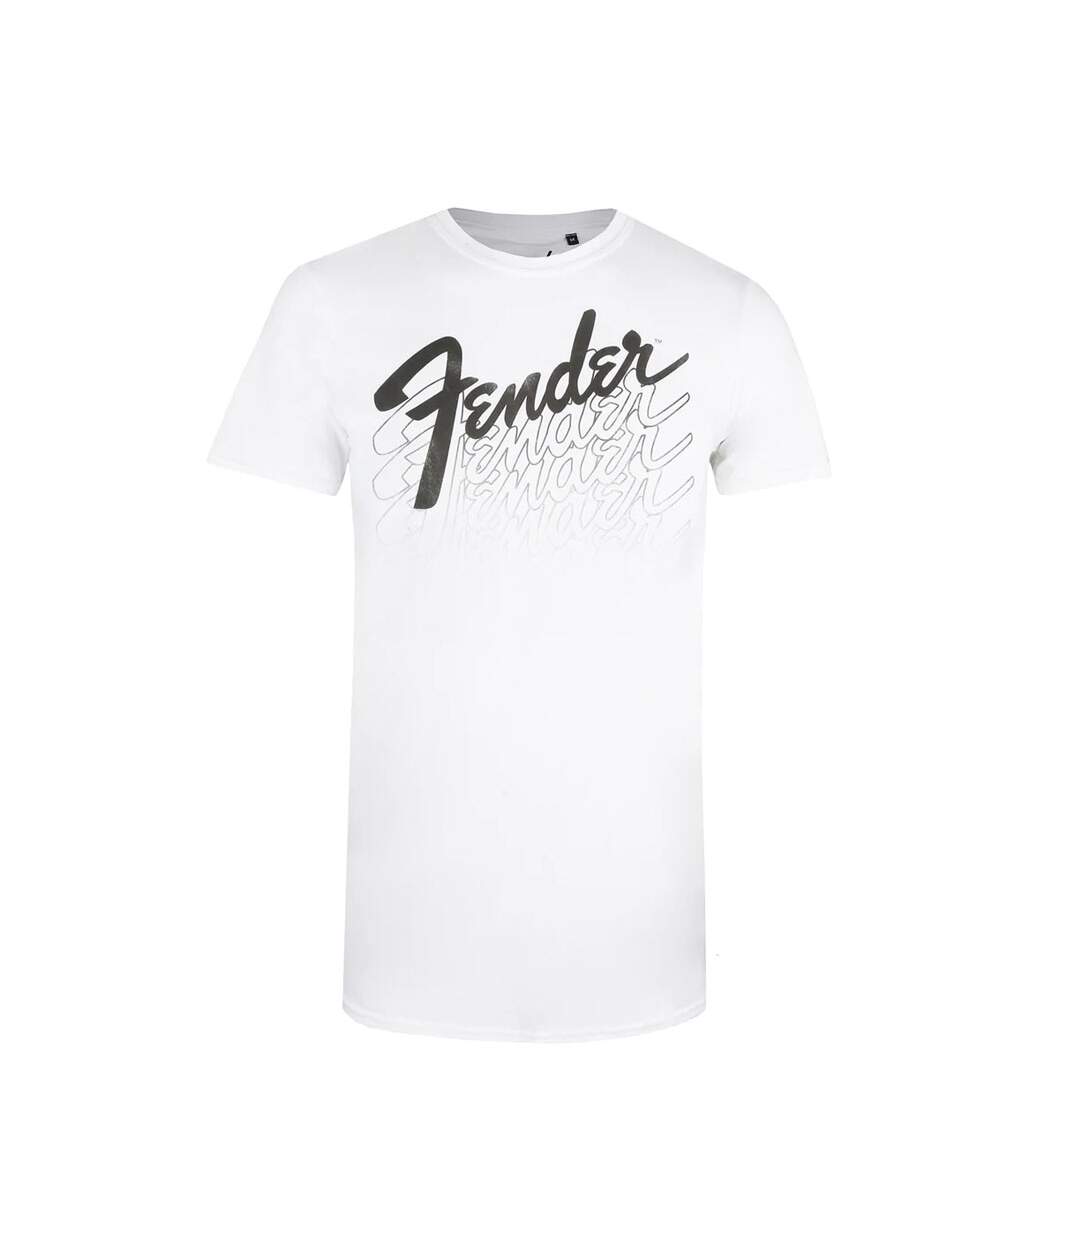 Fender - T-shirt - Homme (Blanc) - UTTV586